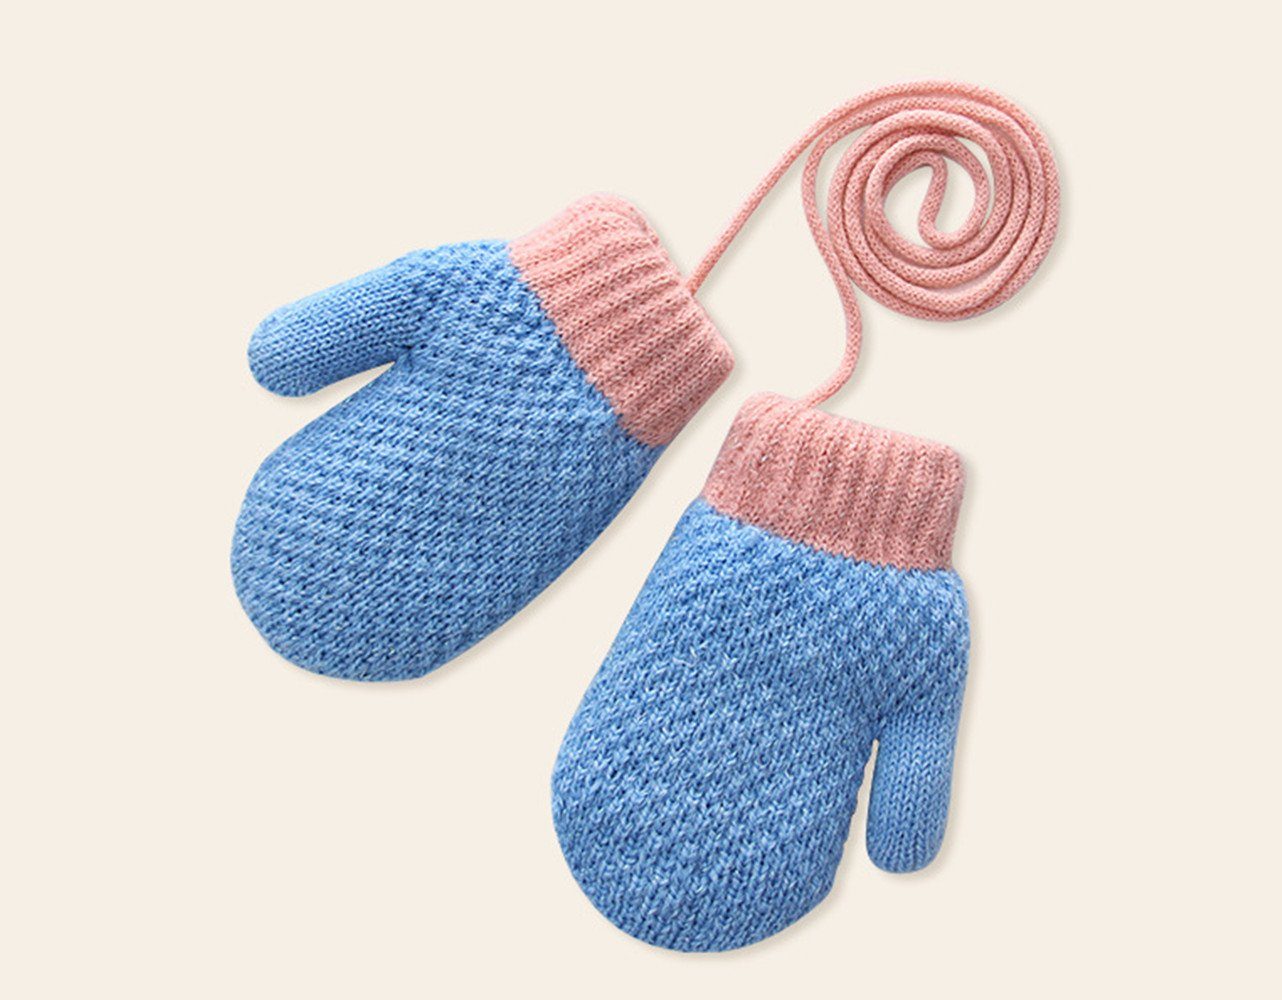 XDeer Fäustlinge Baby Handschuhe, Fäustlinge Kinder Winterhandschuhe Warm Strickhandschuhe mit Schlüsselband für 1-3 Jahre Mädchen Junge blue